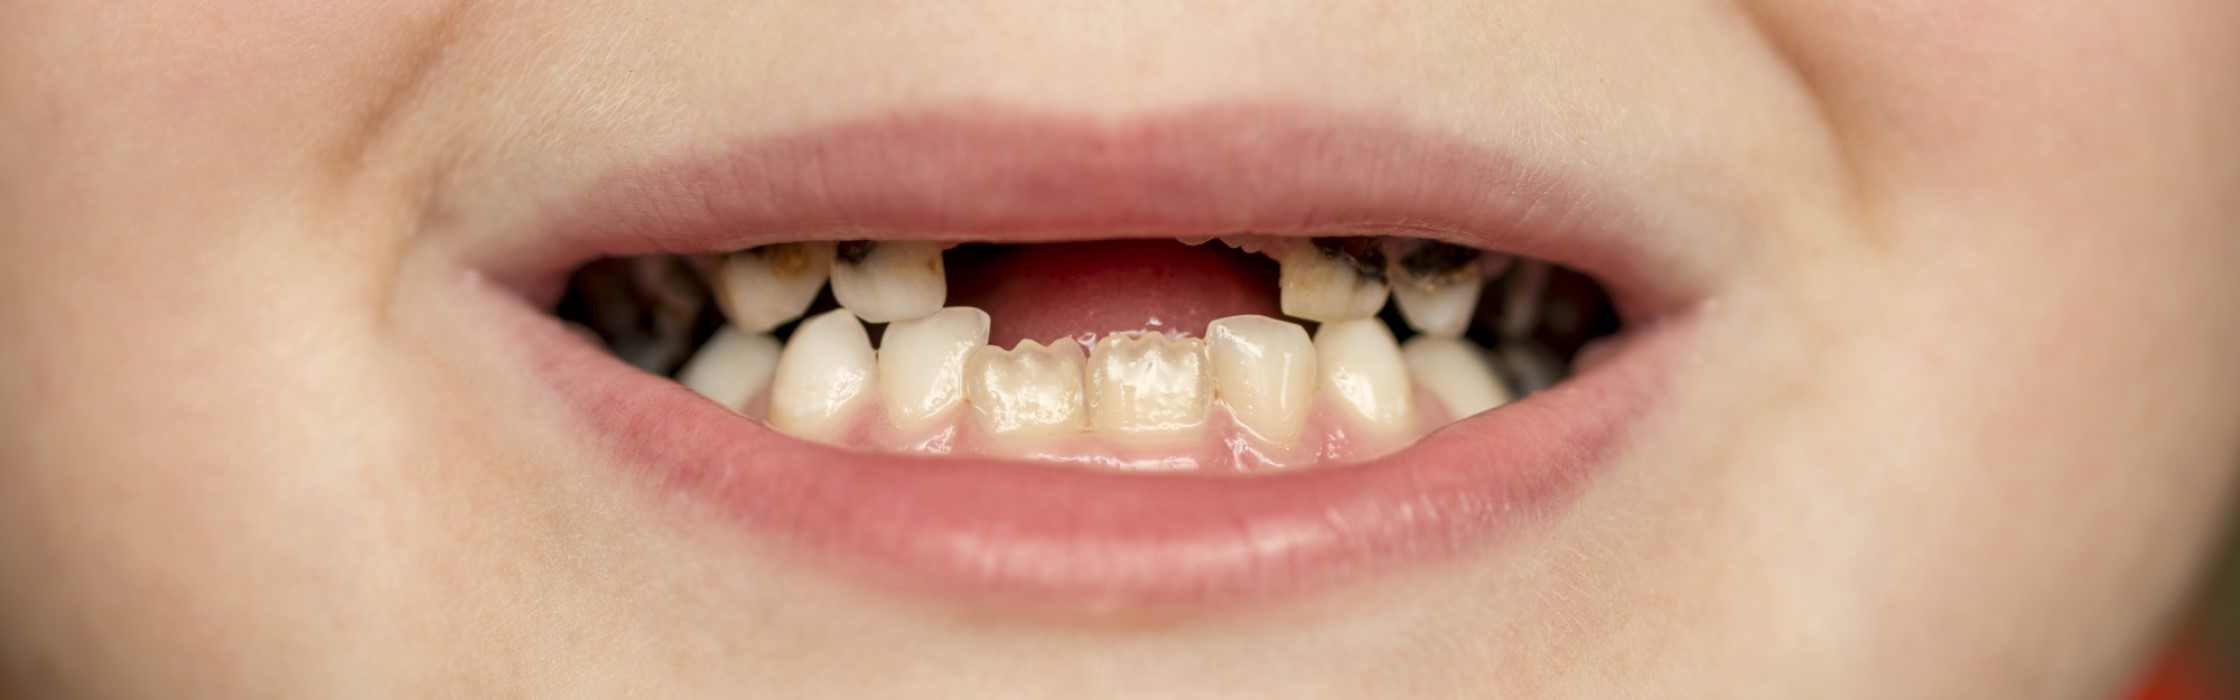 Faule Zähne: Was tun bei Kariesbefall der Zähne?